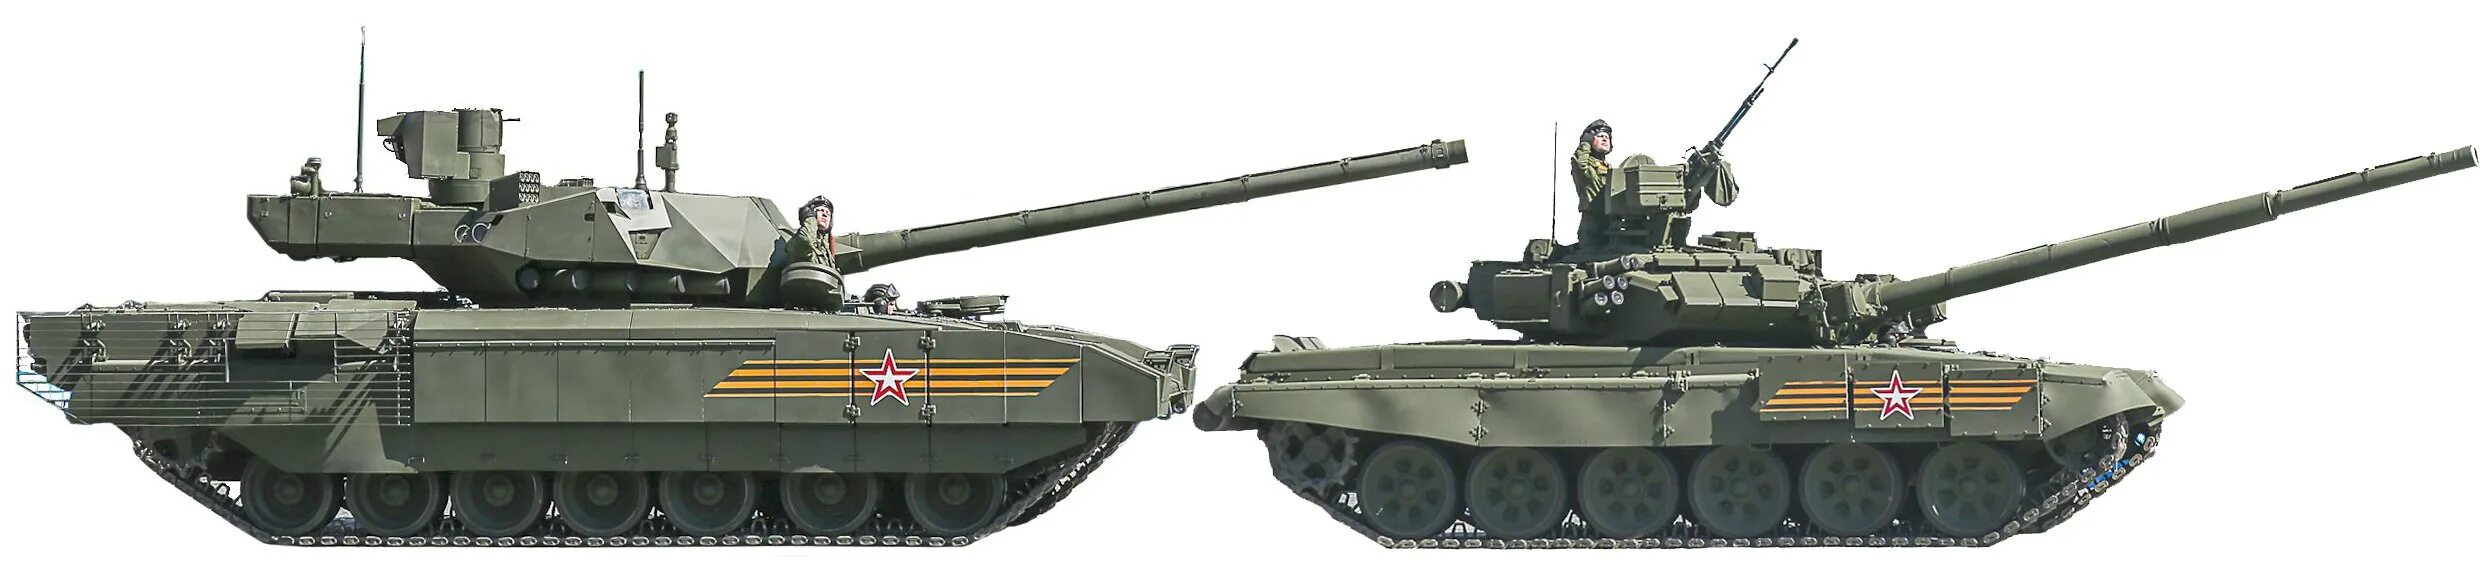 Танк т 90 Армата. Танк т 72 Армата. Т90 Армата. Т-14 Армата и т-90. Сравнение танка т 90